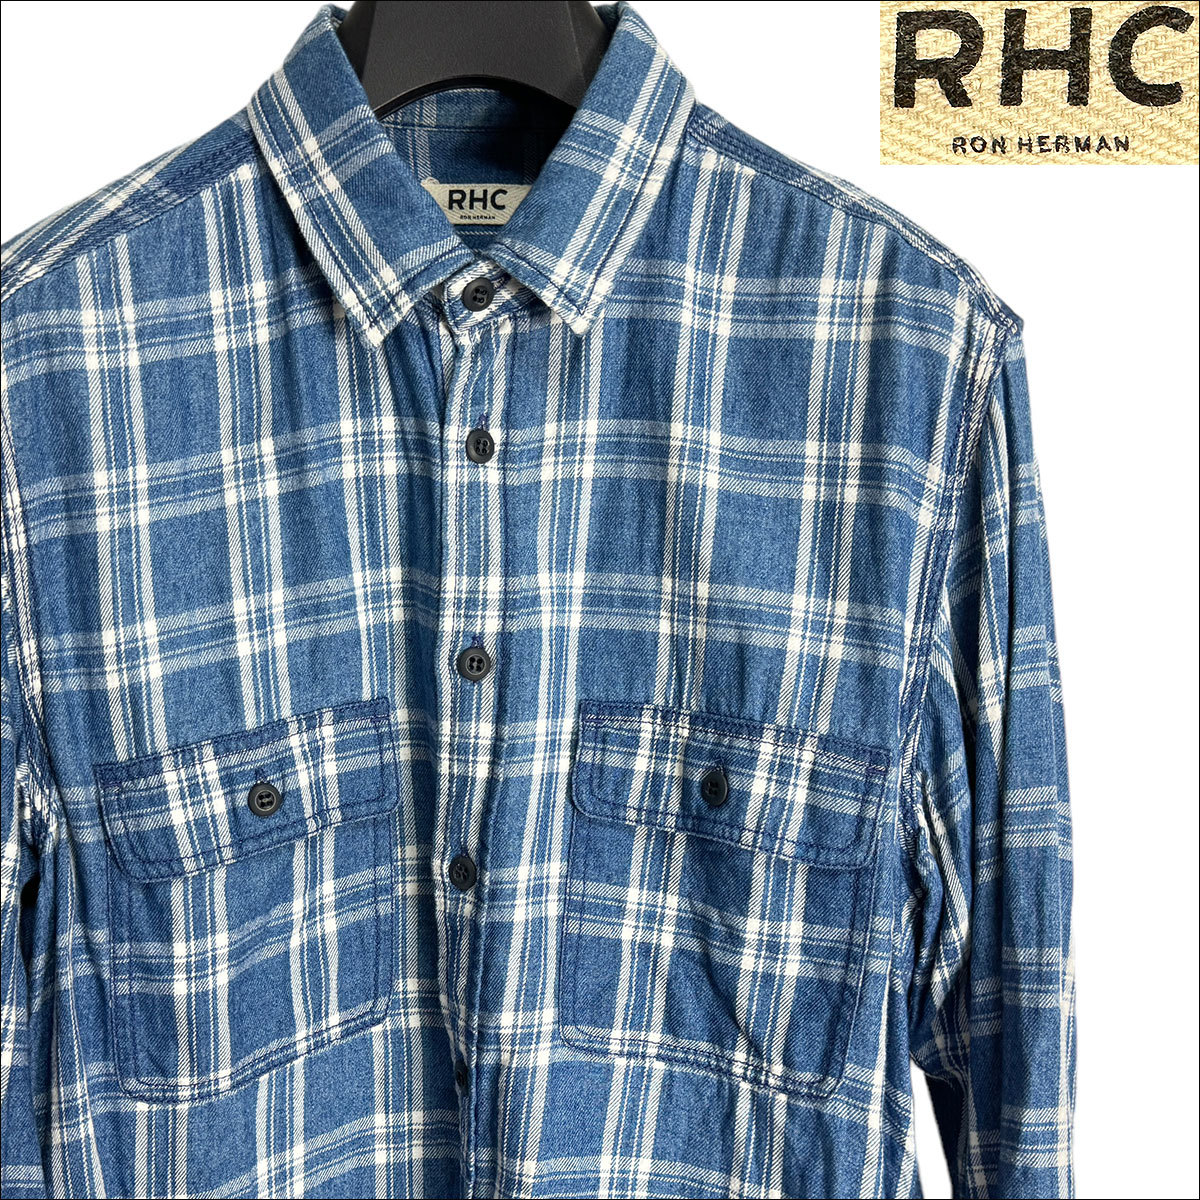 残りわずか】 チェック柄シャツ Ron RHC 美品 J6185 ブルー系 ロン